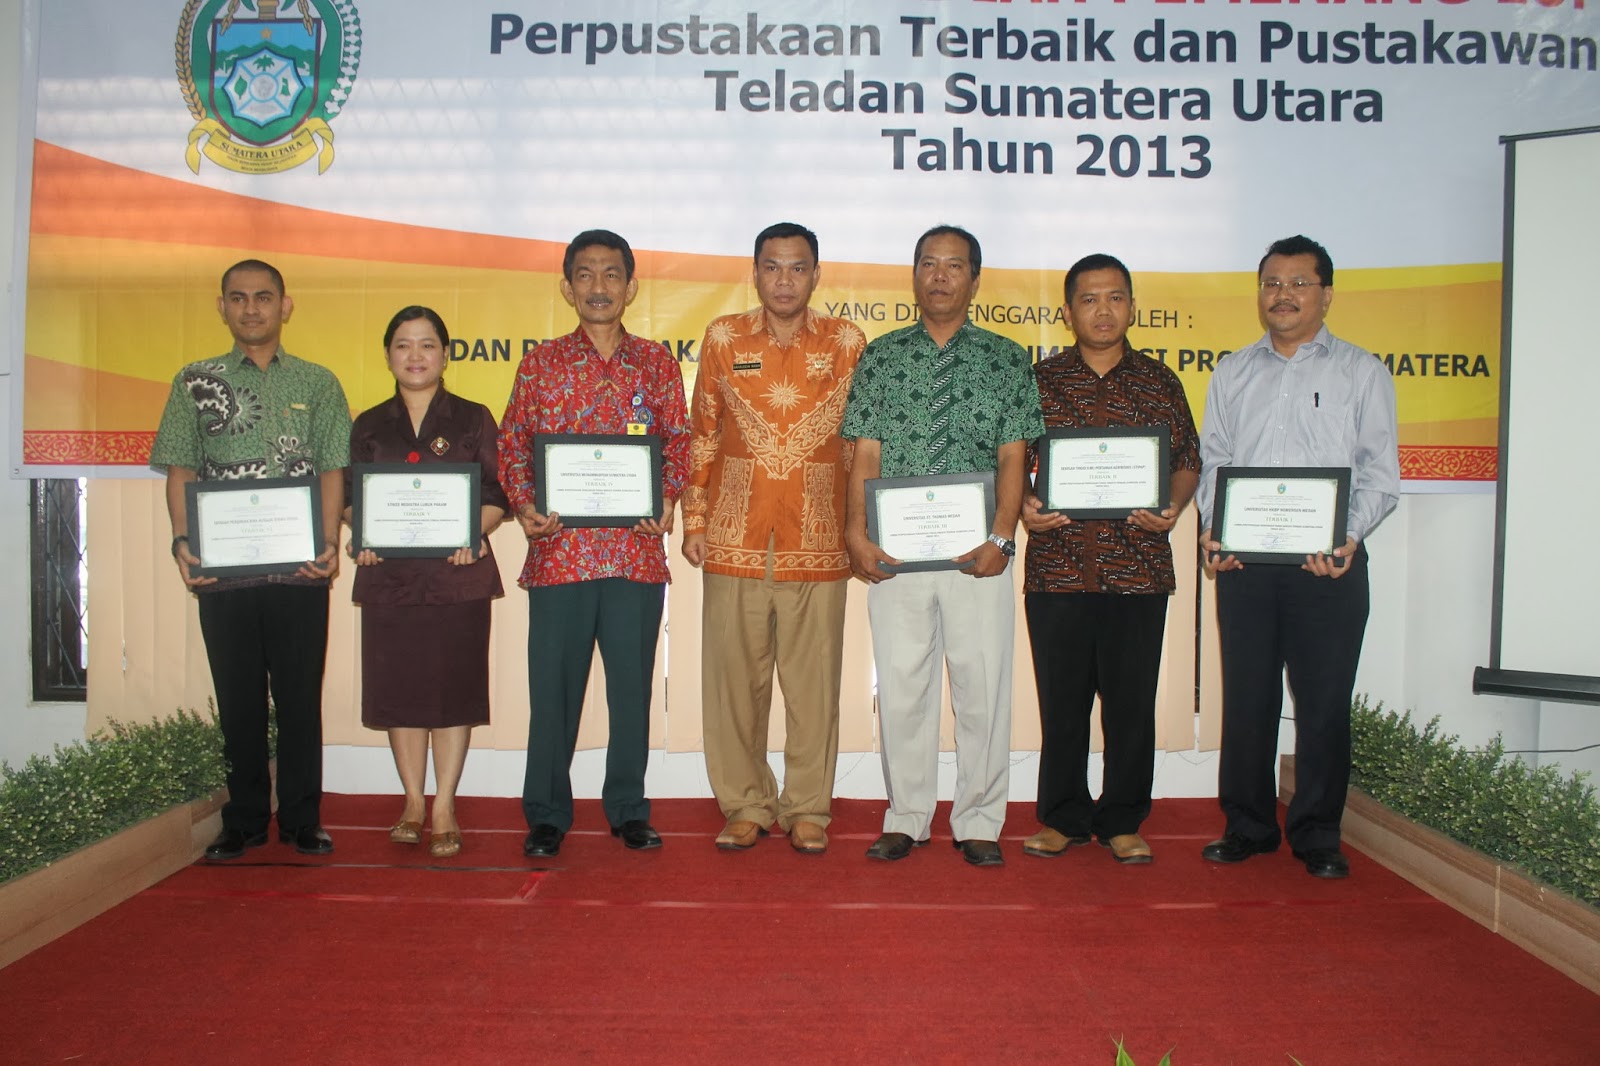  Penghargaan Perpustakaan Terbaik Sumatera Utara 